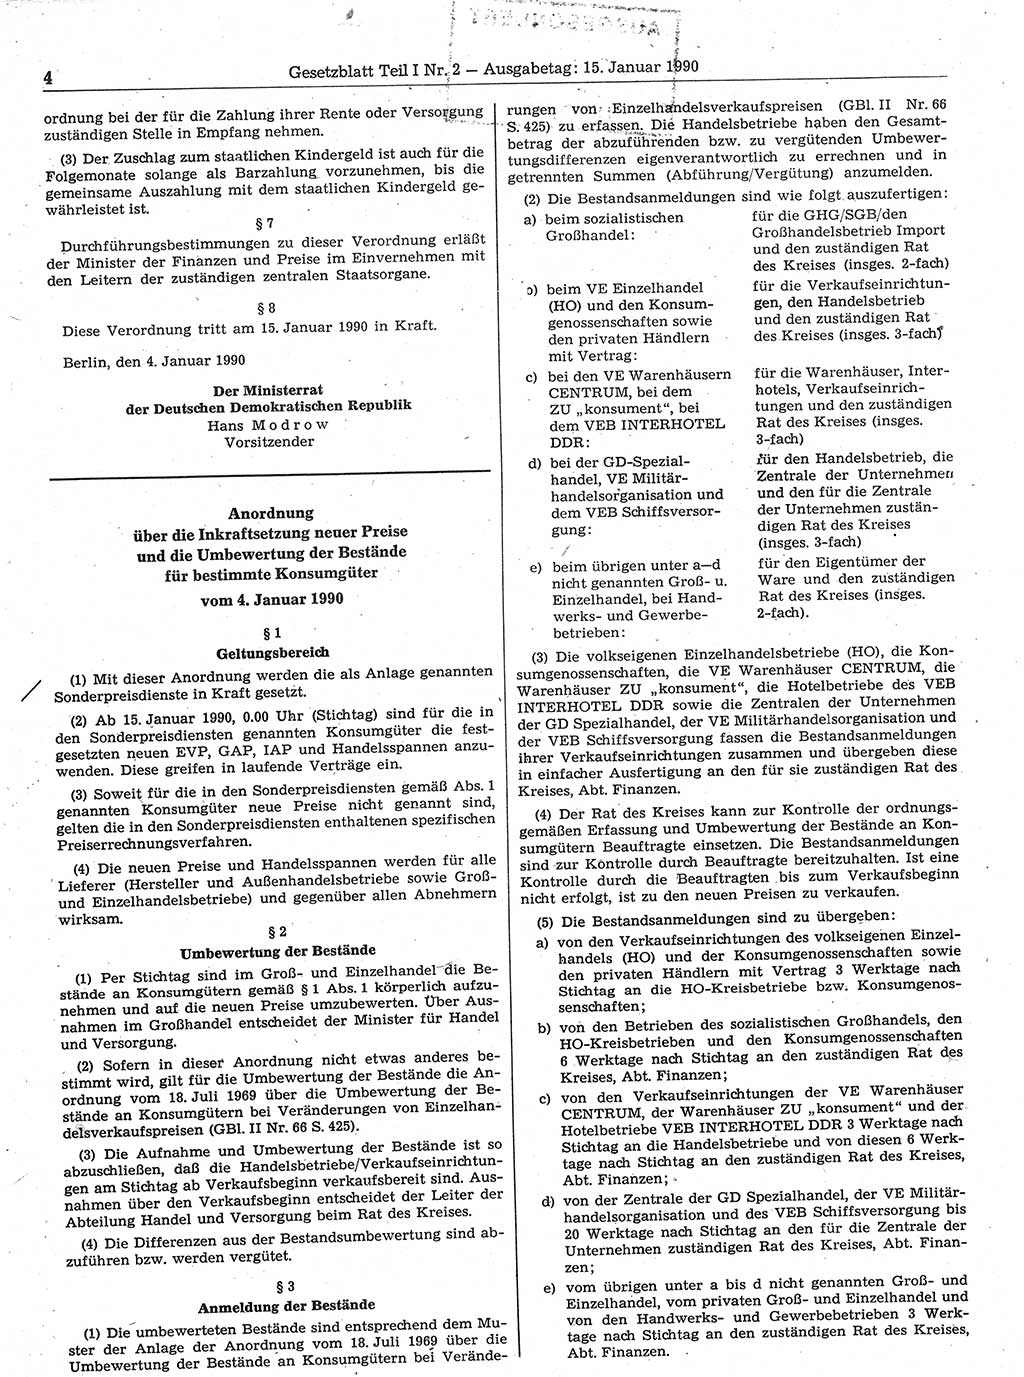 Gesetzblatt (GBl.) der Deutschen Demokratischen Republik (DDR) Teil Ⅰ 1990, Seite 4 (GBl. DDR Ⅰ 1990, S. 4)